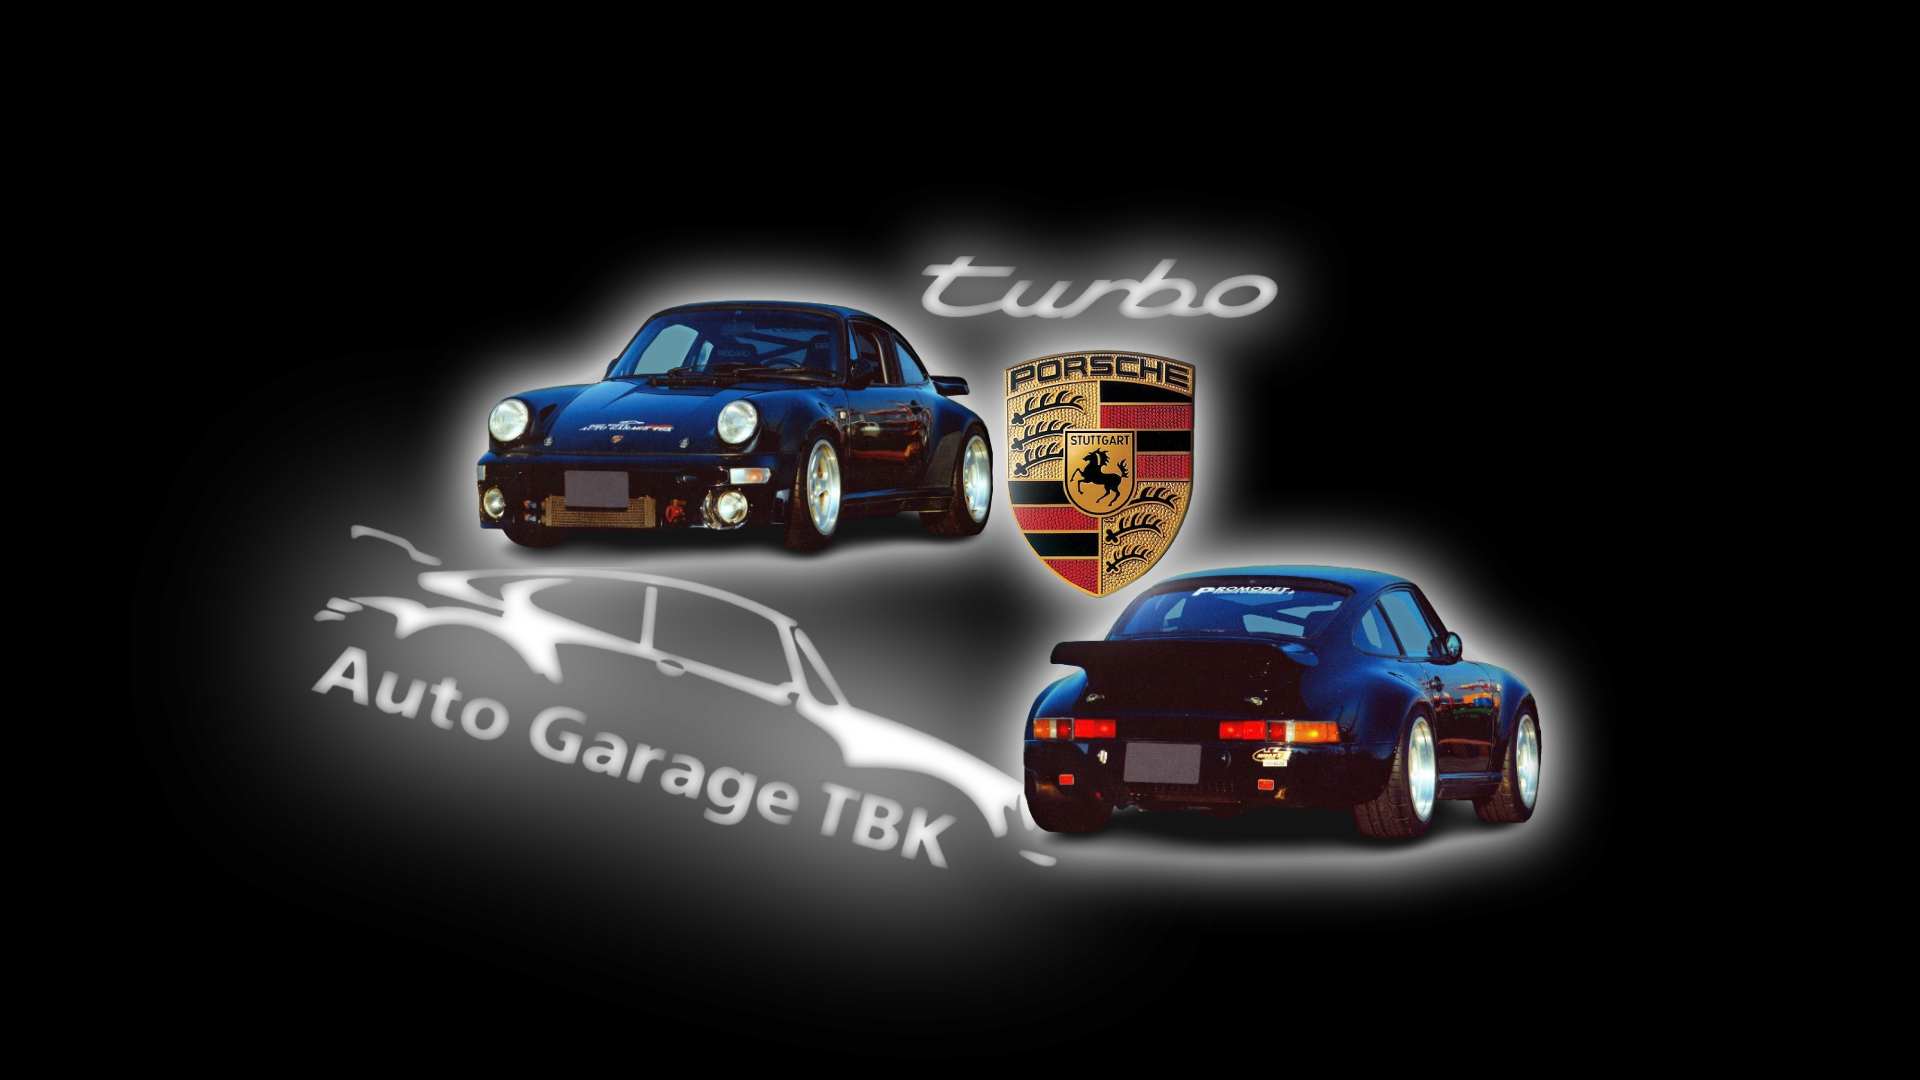 Auto Garage TBK Porsche 1920x1080